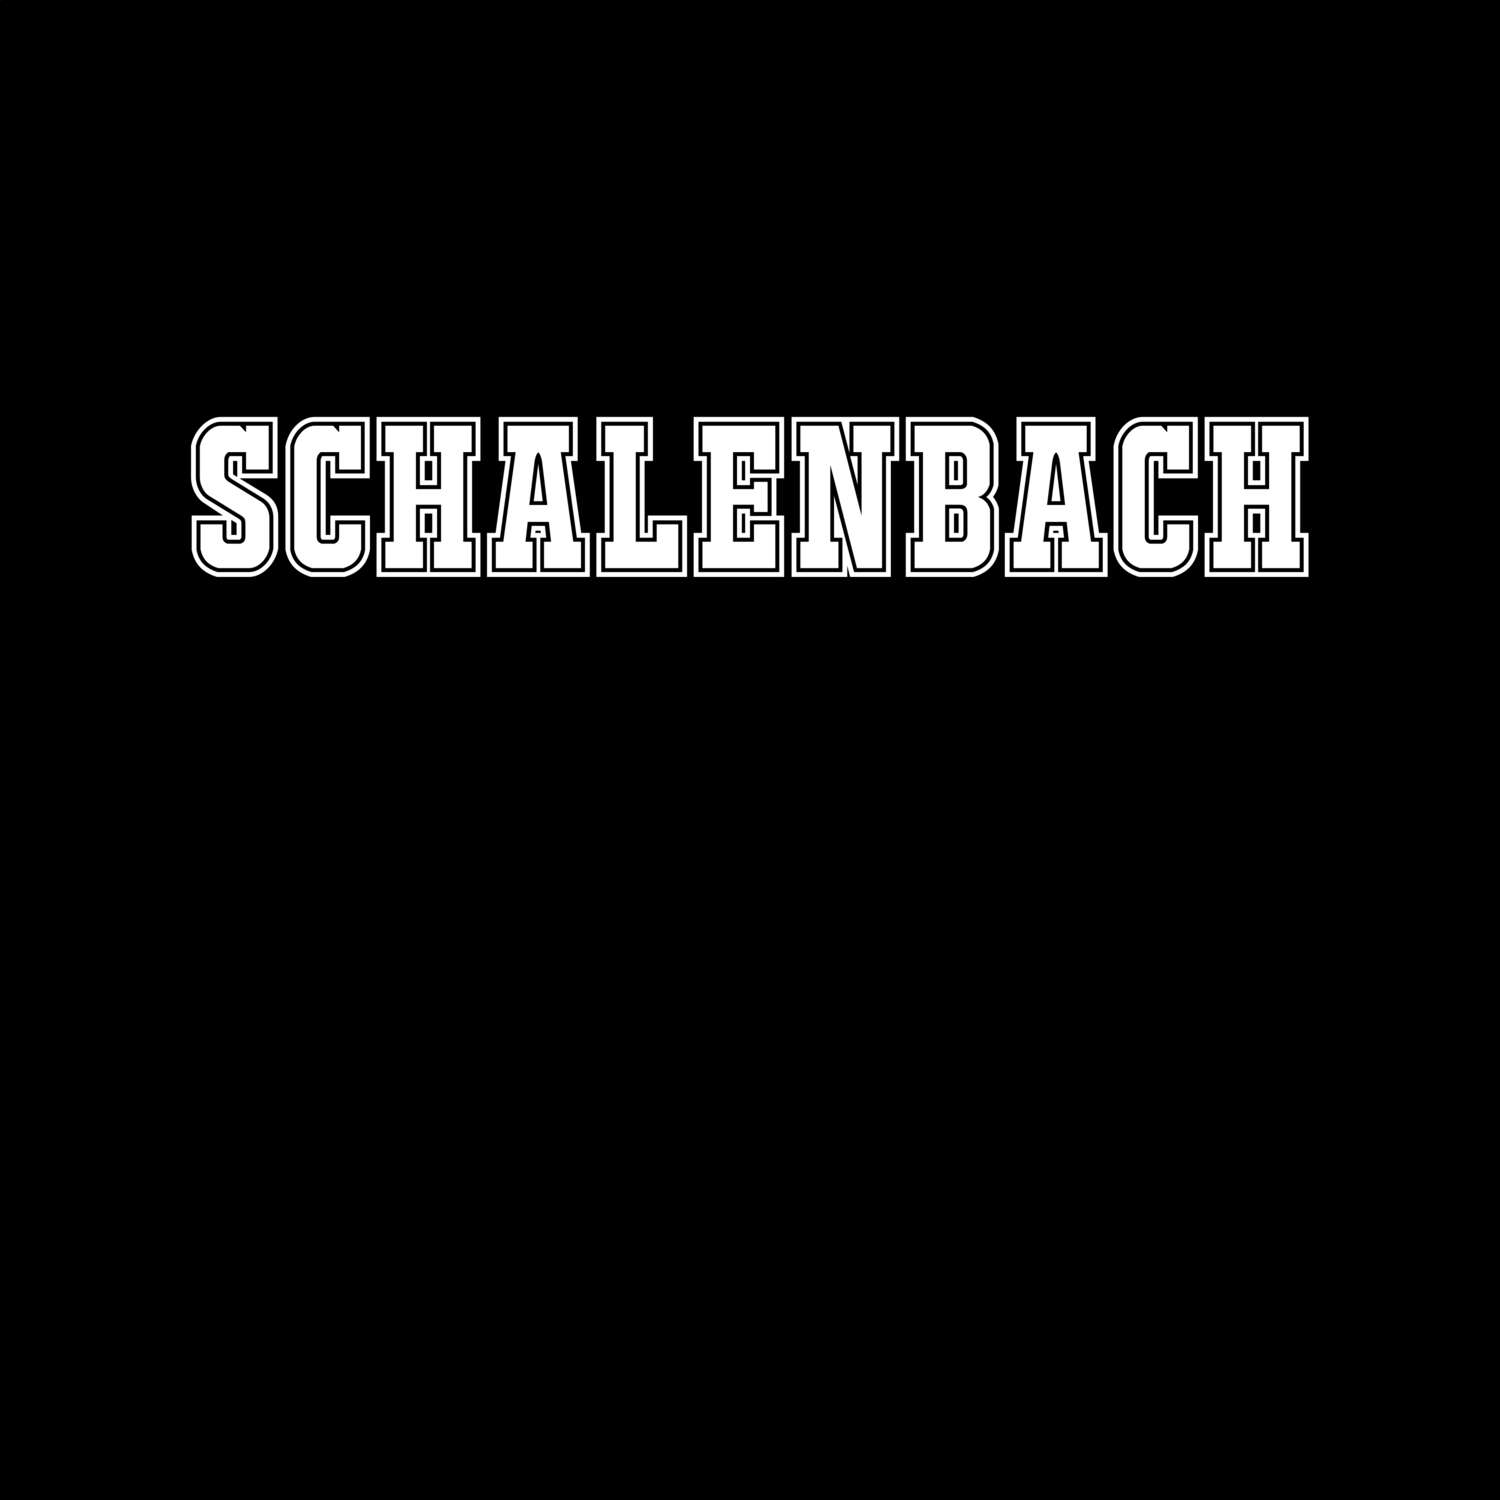 Schalenbach T-Shirt »Classic«